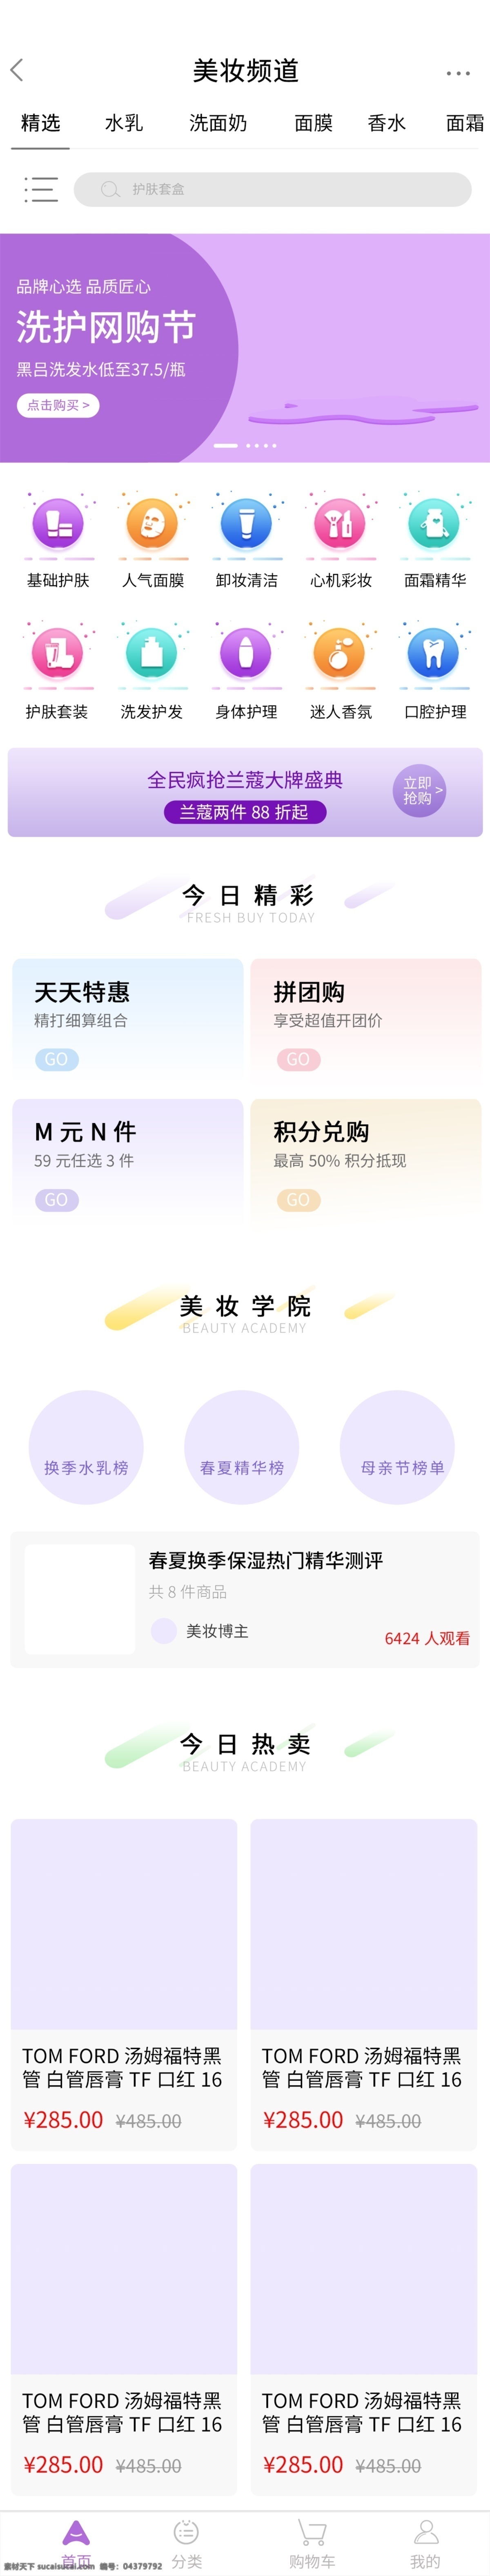 梦幻 紫色 美 妆 app 化妆品 首页 美妆